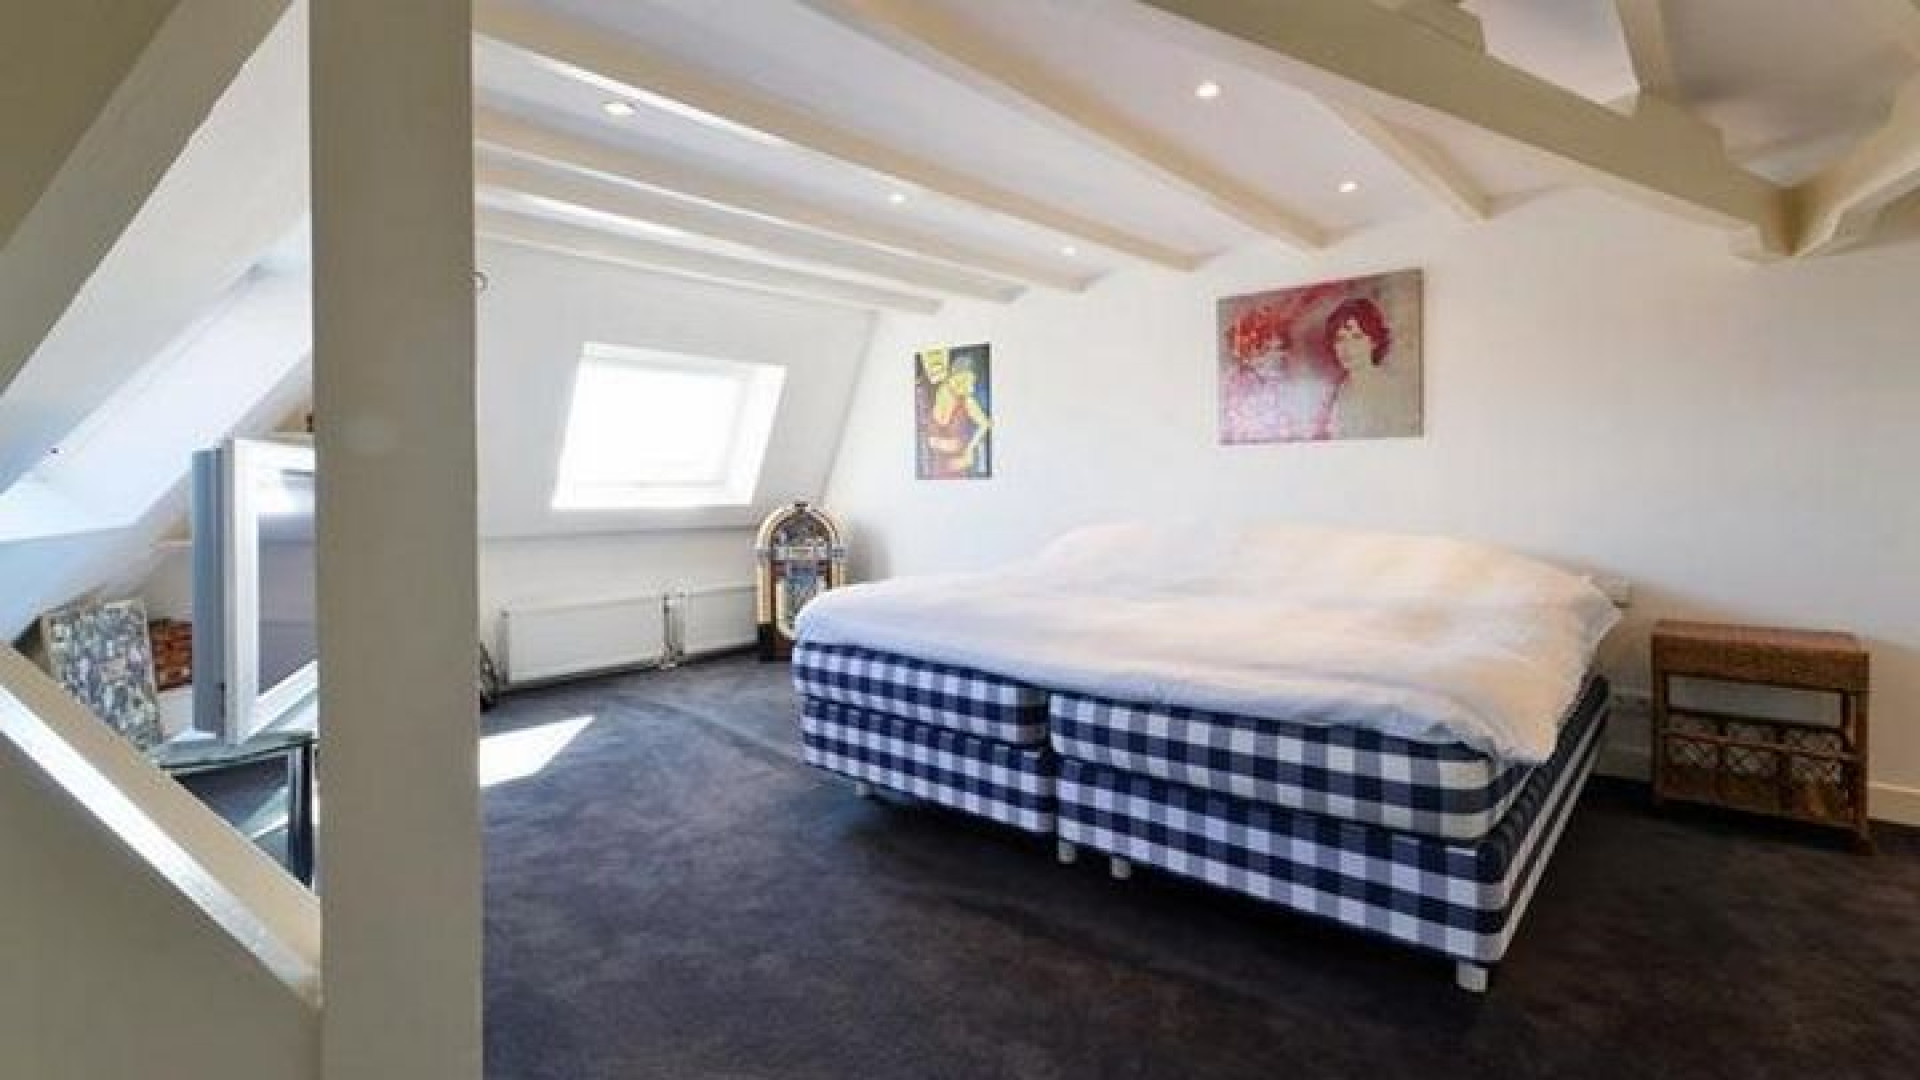 John de Mol koopt appartement van zoon Johnny in Amsterdam. Zie foto's 14